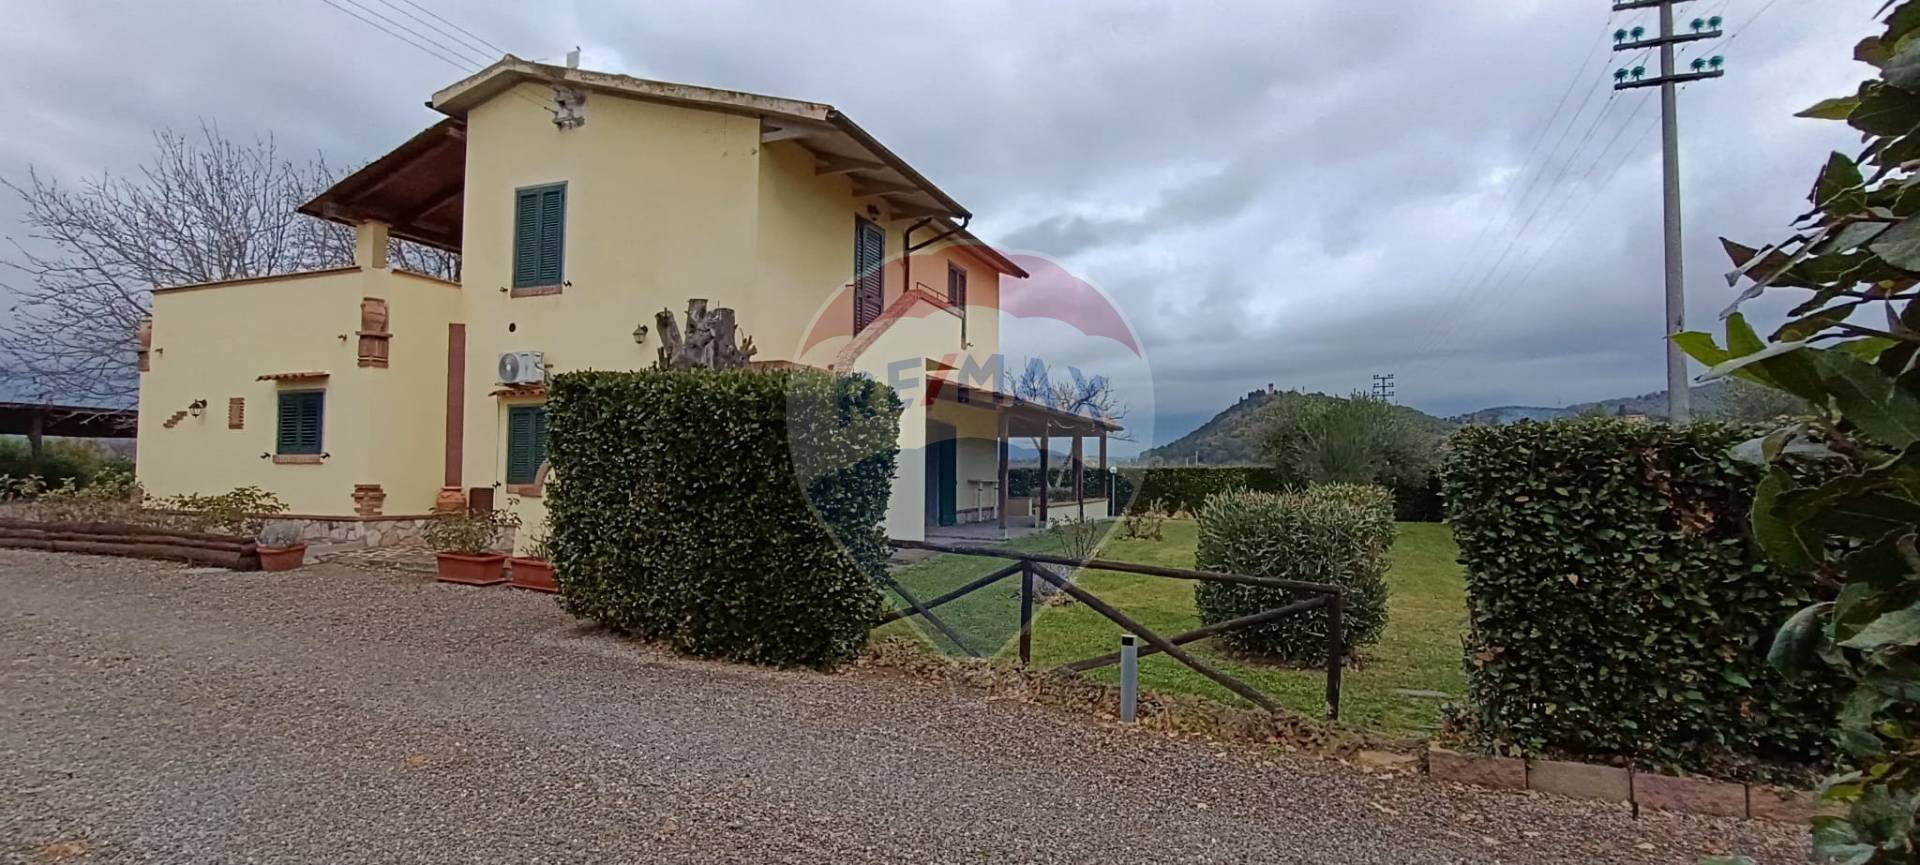 Rustico / Casale in vendita a Manciano, 4 locali, zona Zona: Marsiliana, prezzo € 640.000 | CambioCasa.it